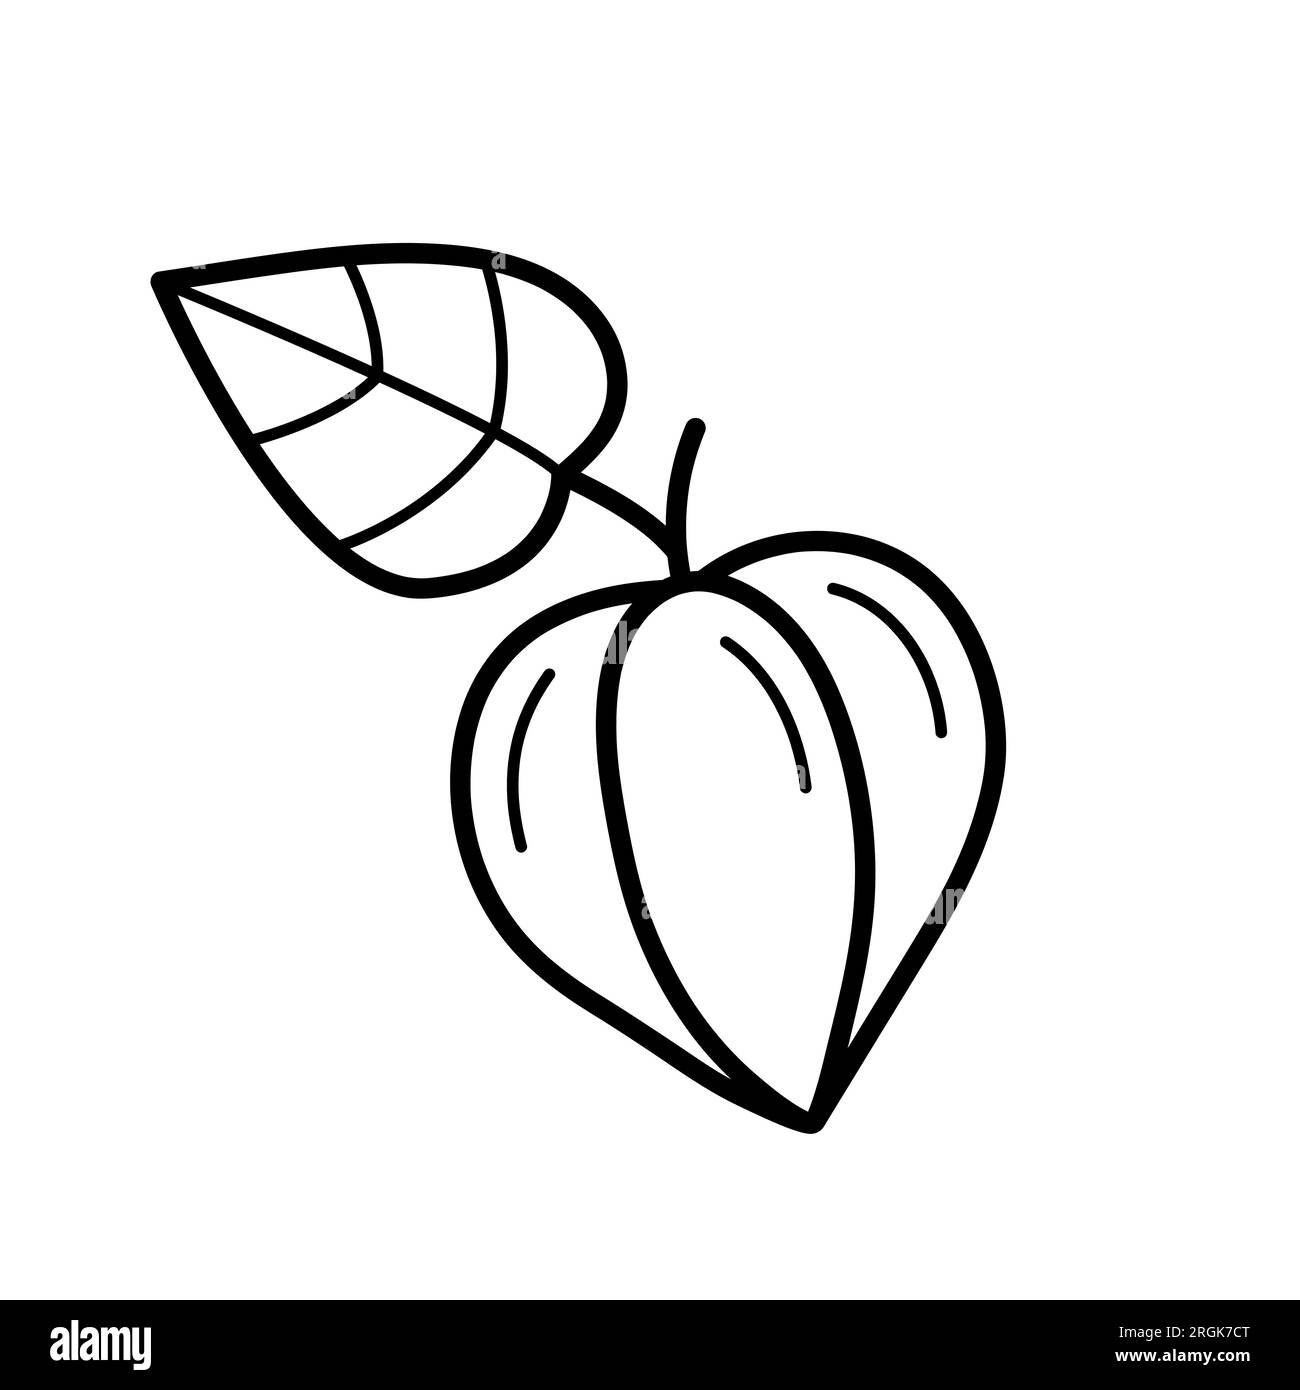 Fiore di Fisalis chiuso. Elemento botanico autunnale. Disegnare lo stile di scarabocchio. Illustrazione vettoriale isolata su sfondo bianco. Illustrazione Vettoriale